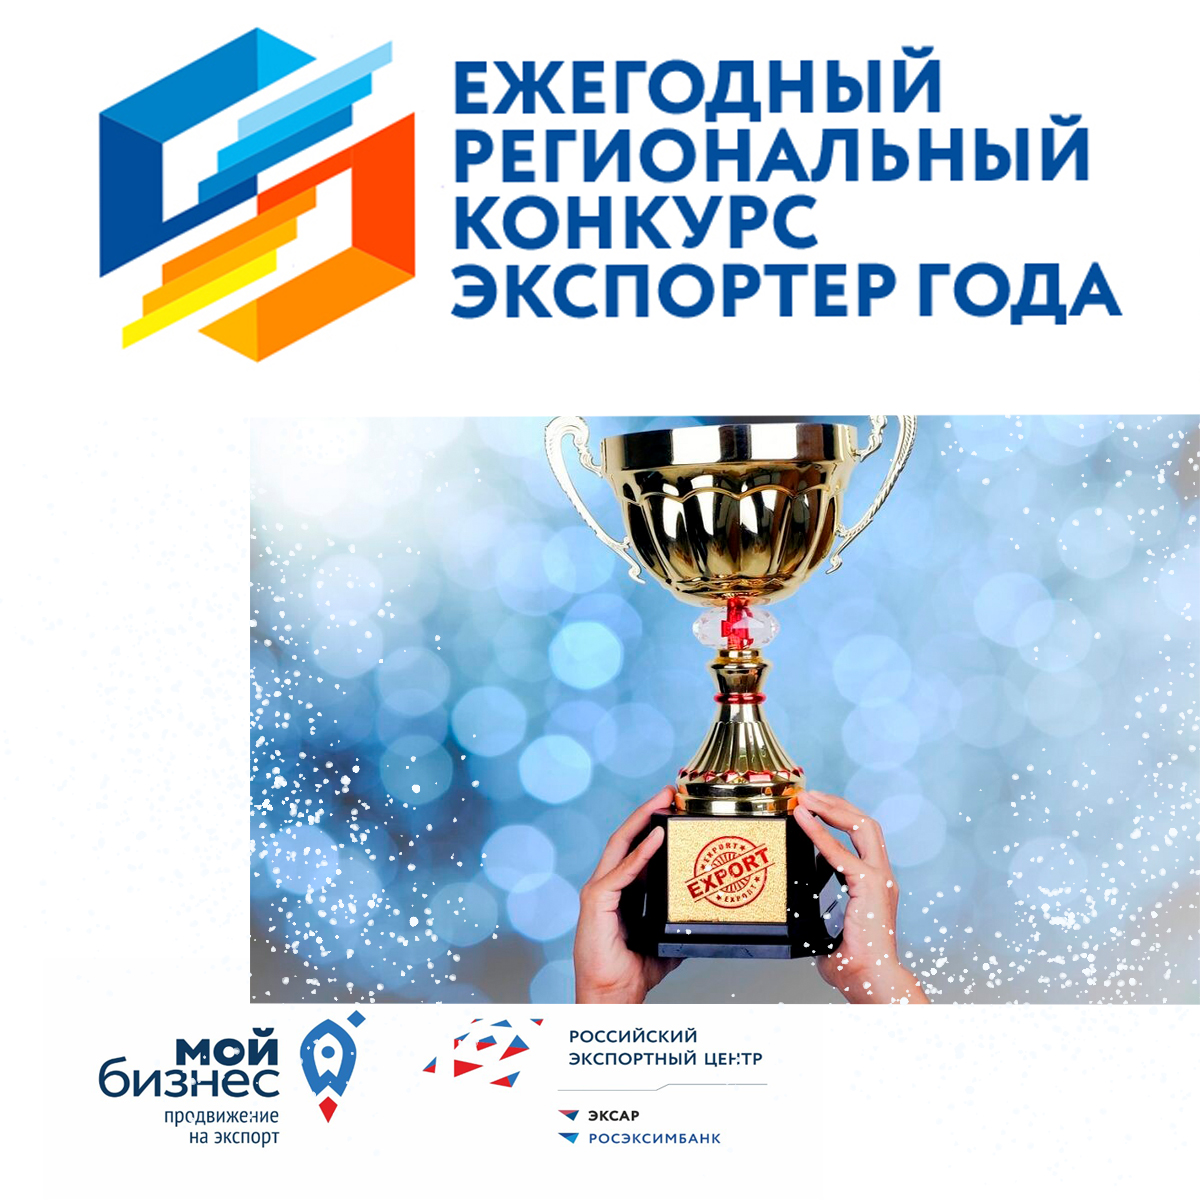 Ежегодный региональный конкурс «Экспортер года»